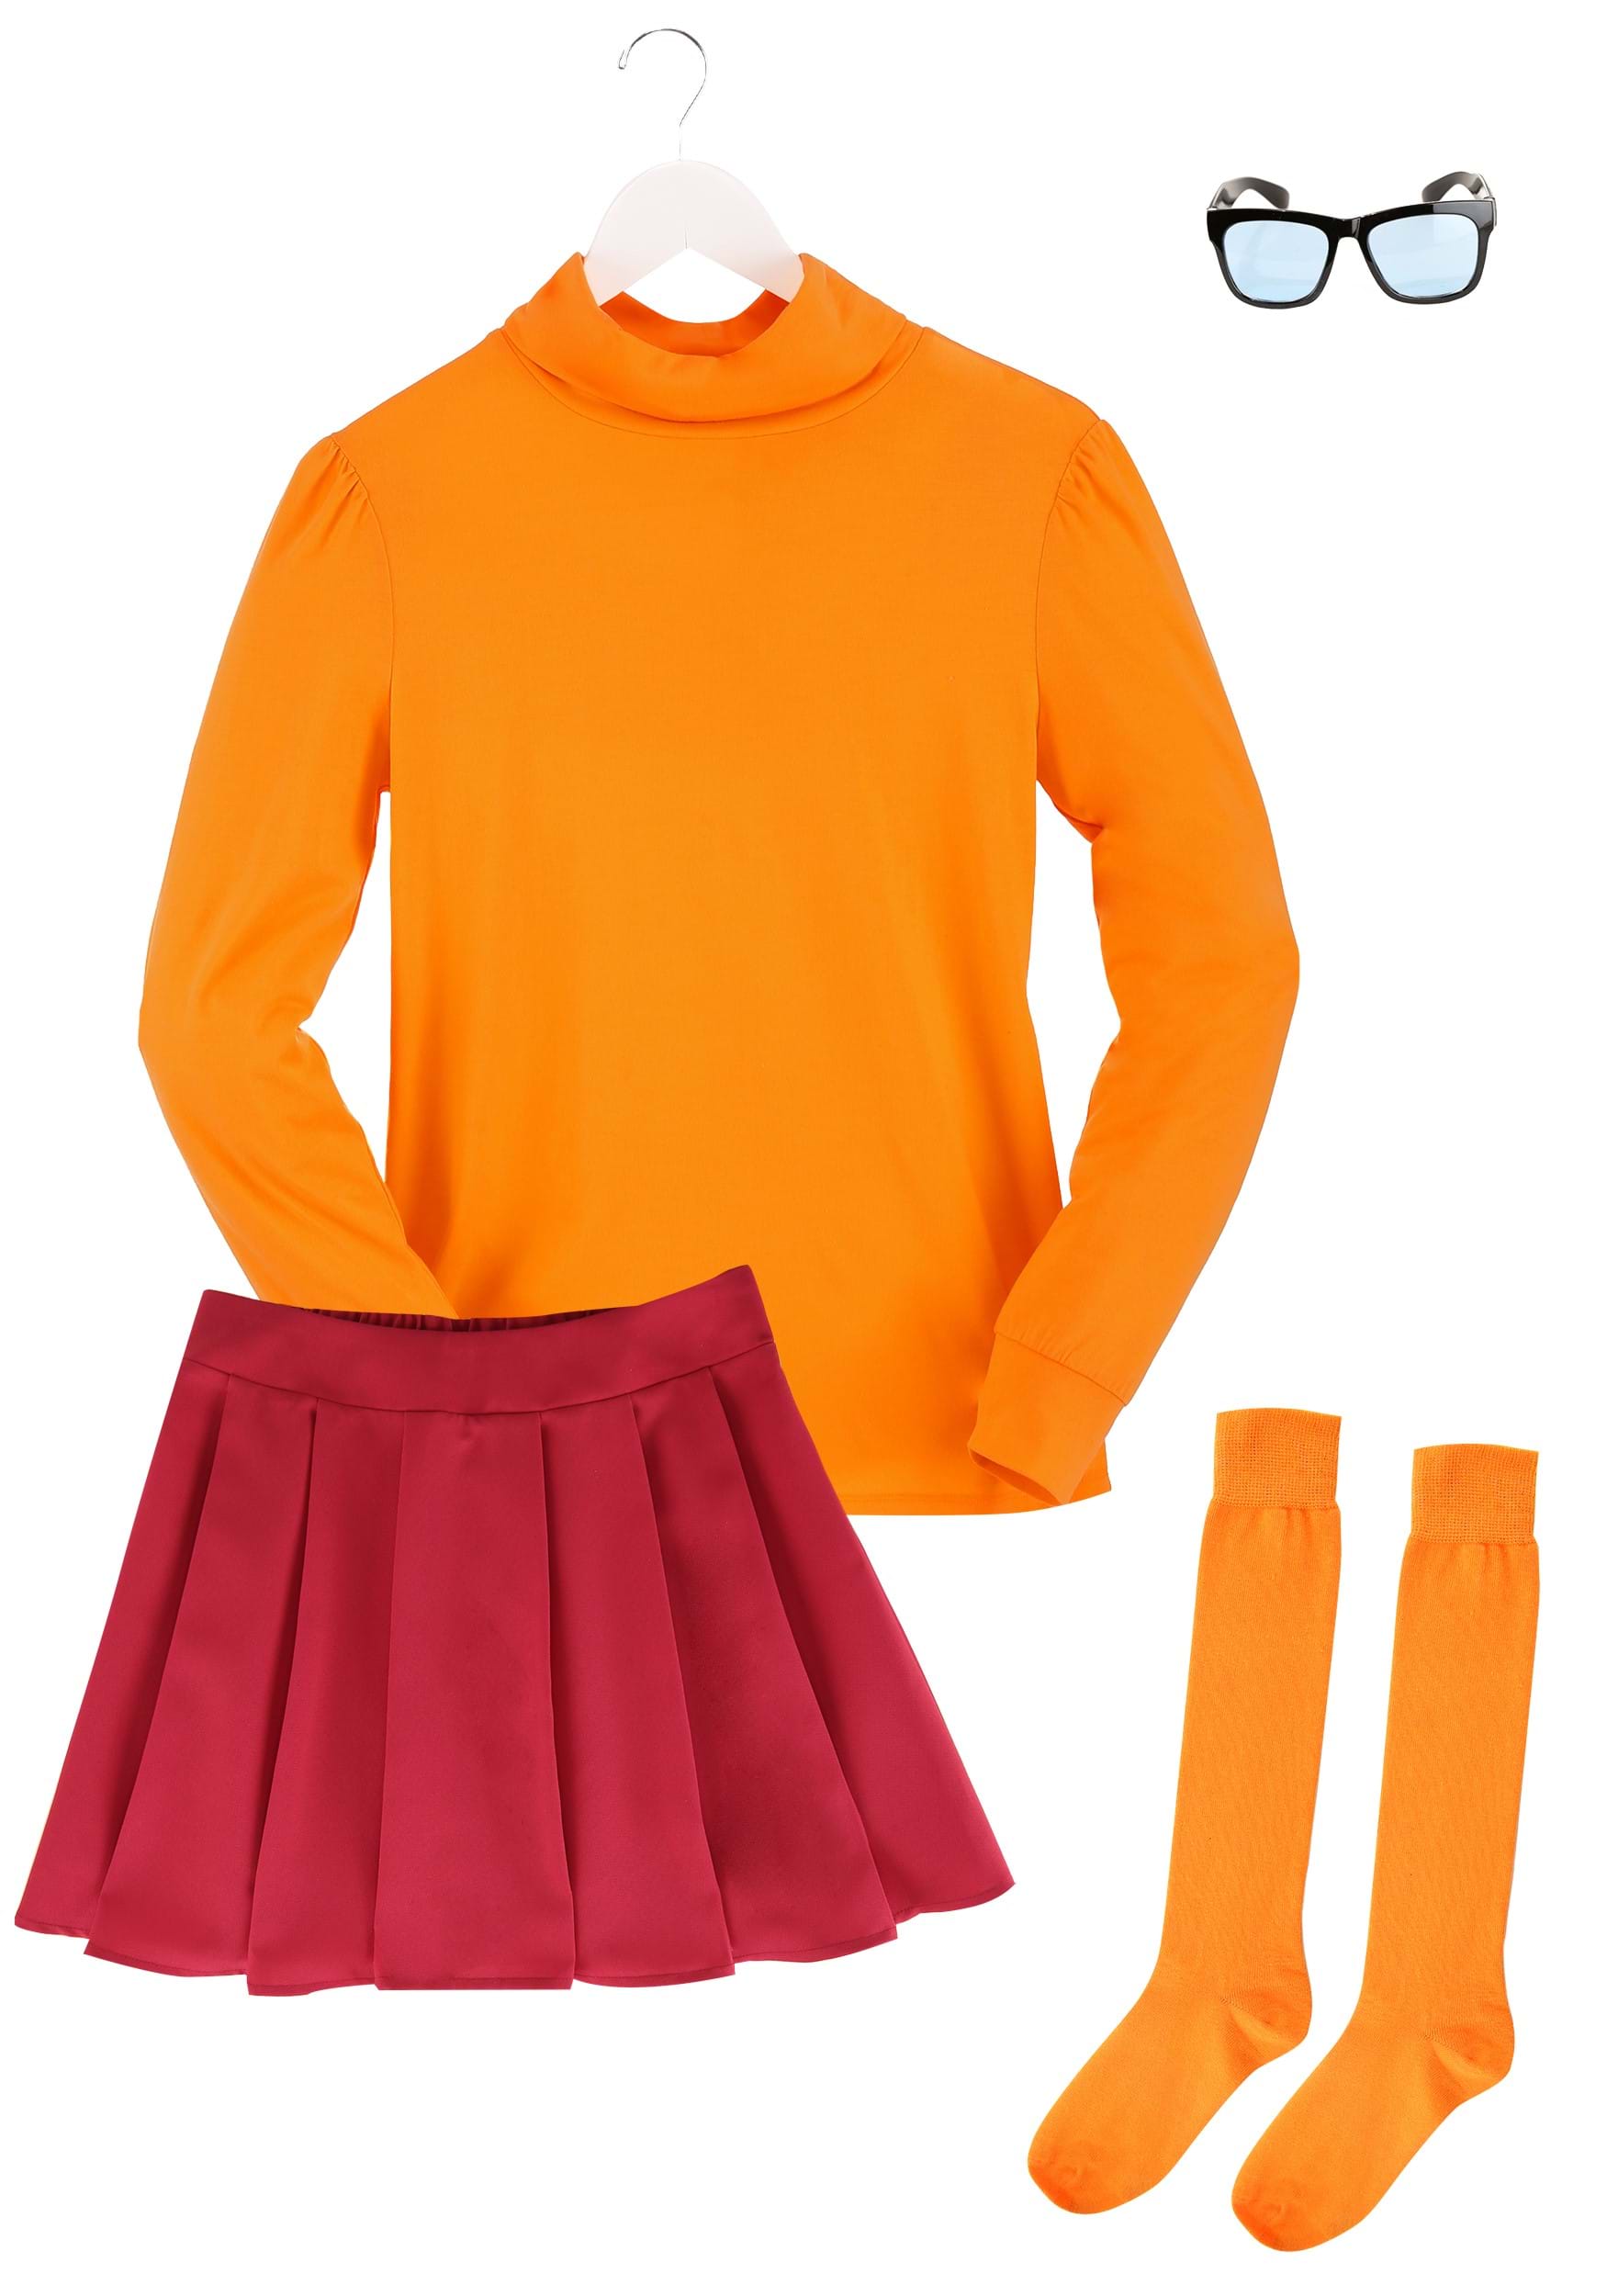 Classic Scooby Doo Velma Women's Costume